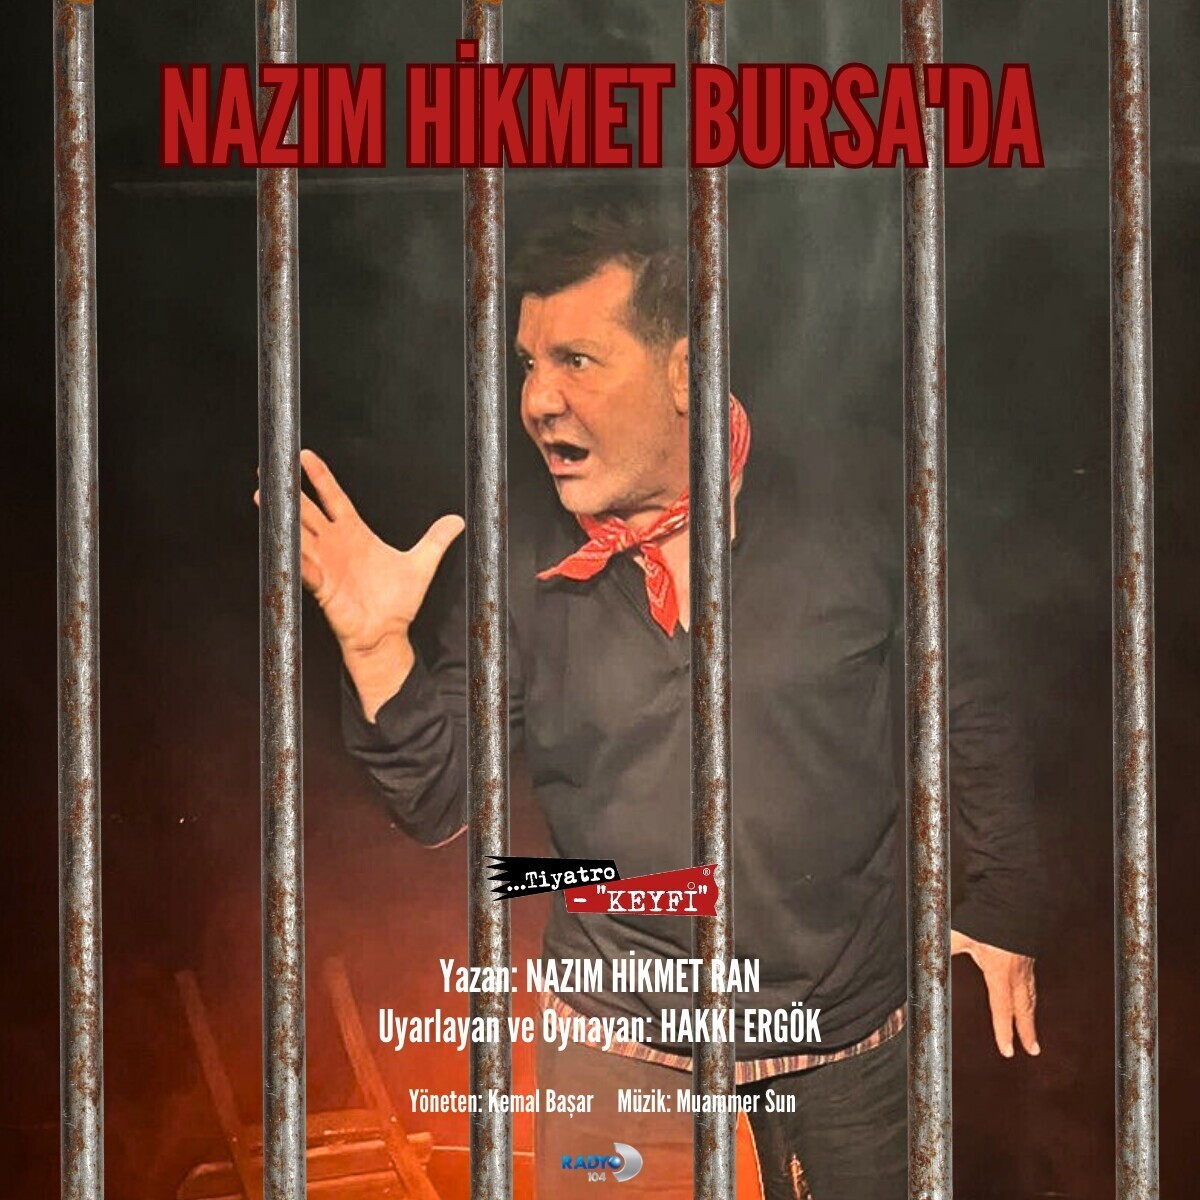 'Nazım Hikmet Bursa’da' Tiyatro Oyunu Bileti